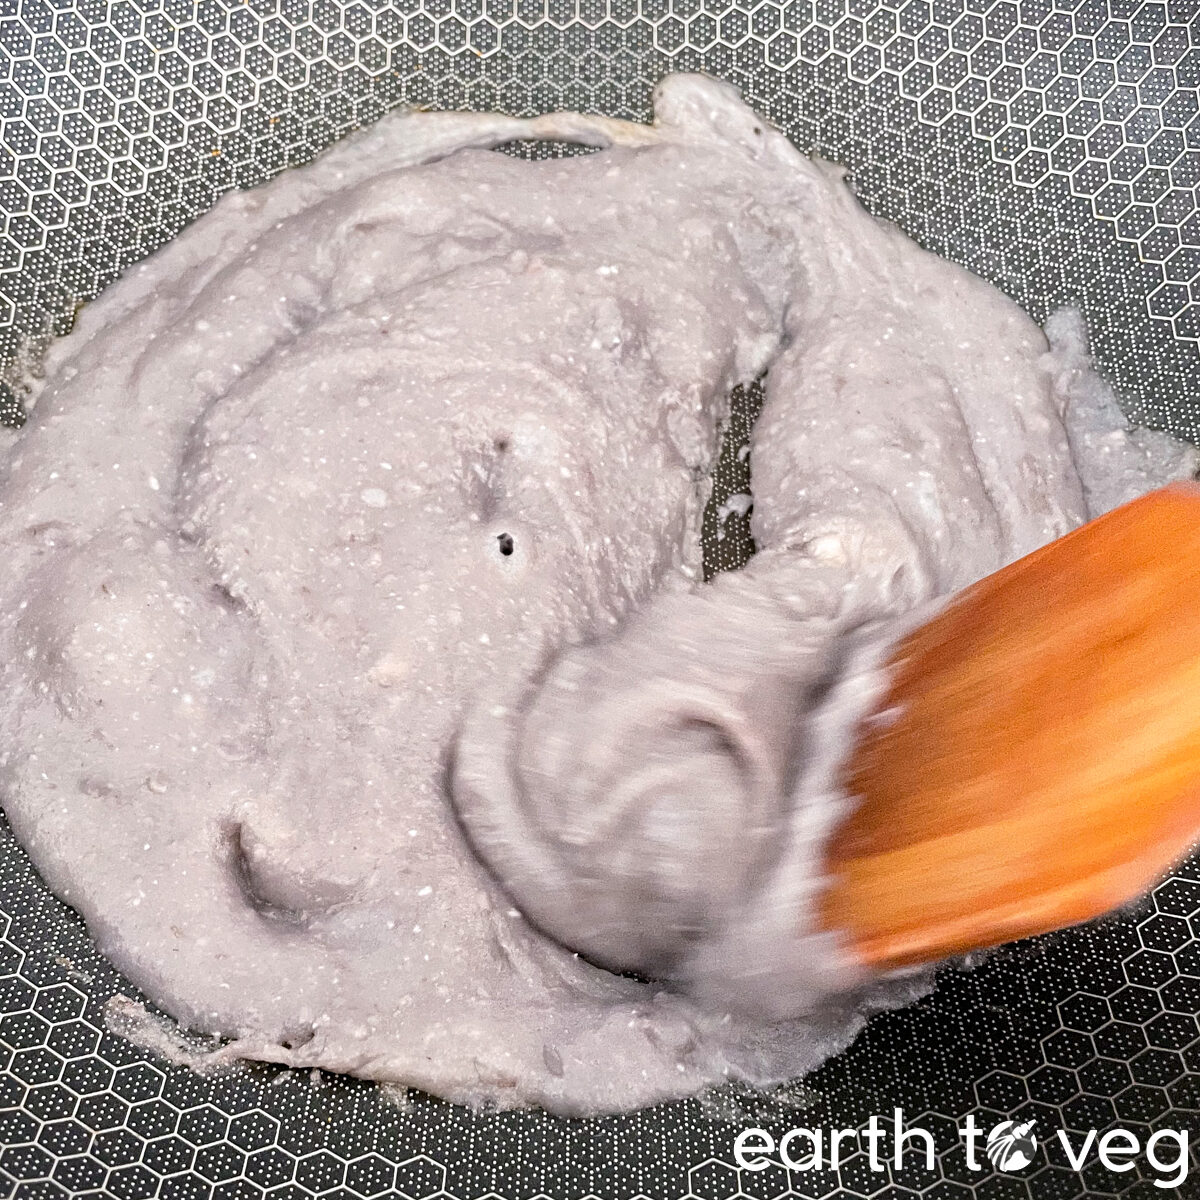 reducing taro paste in a wok